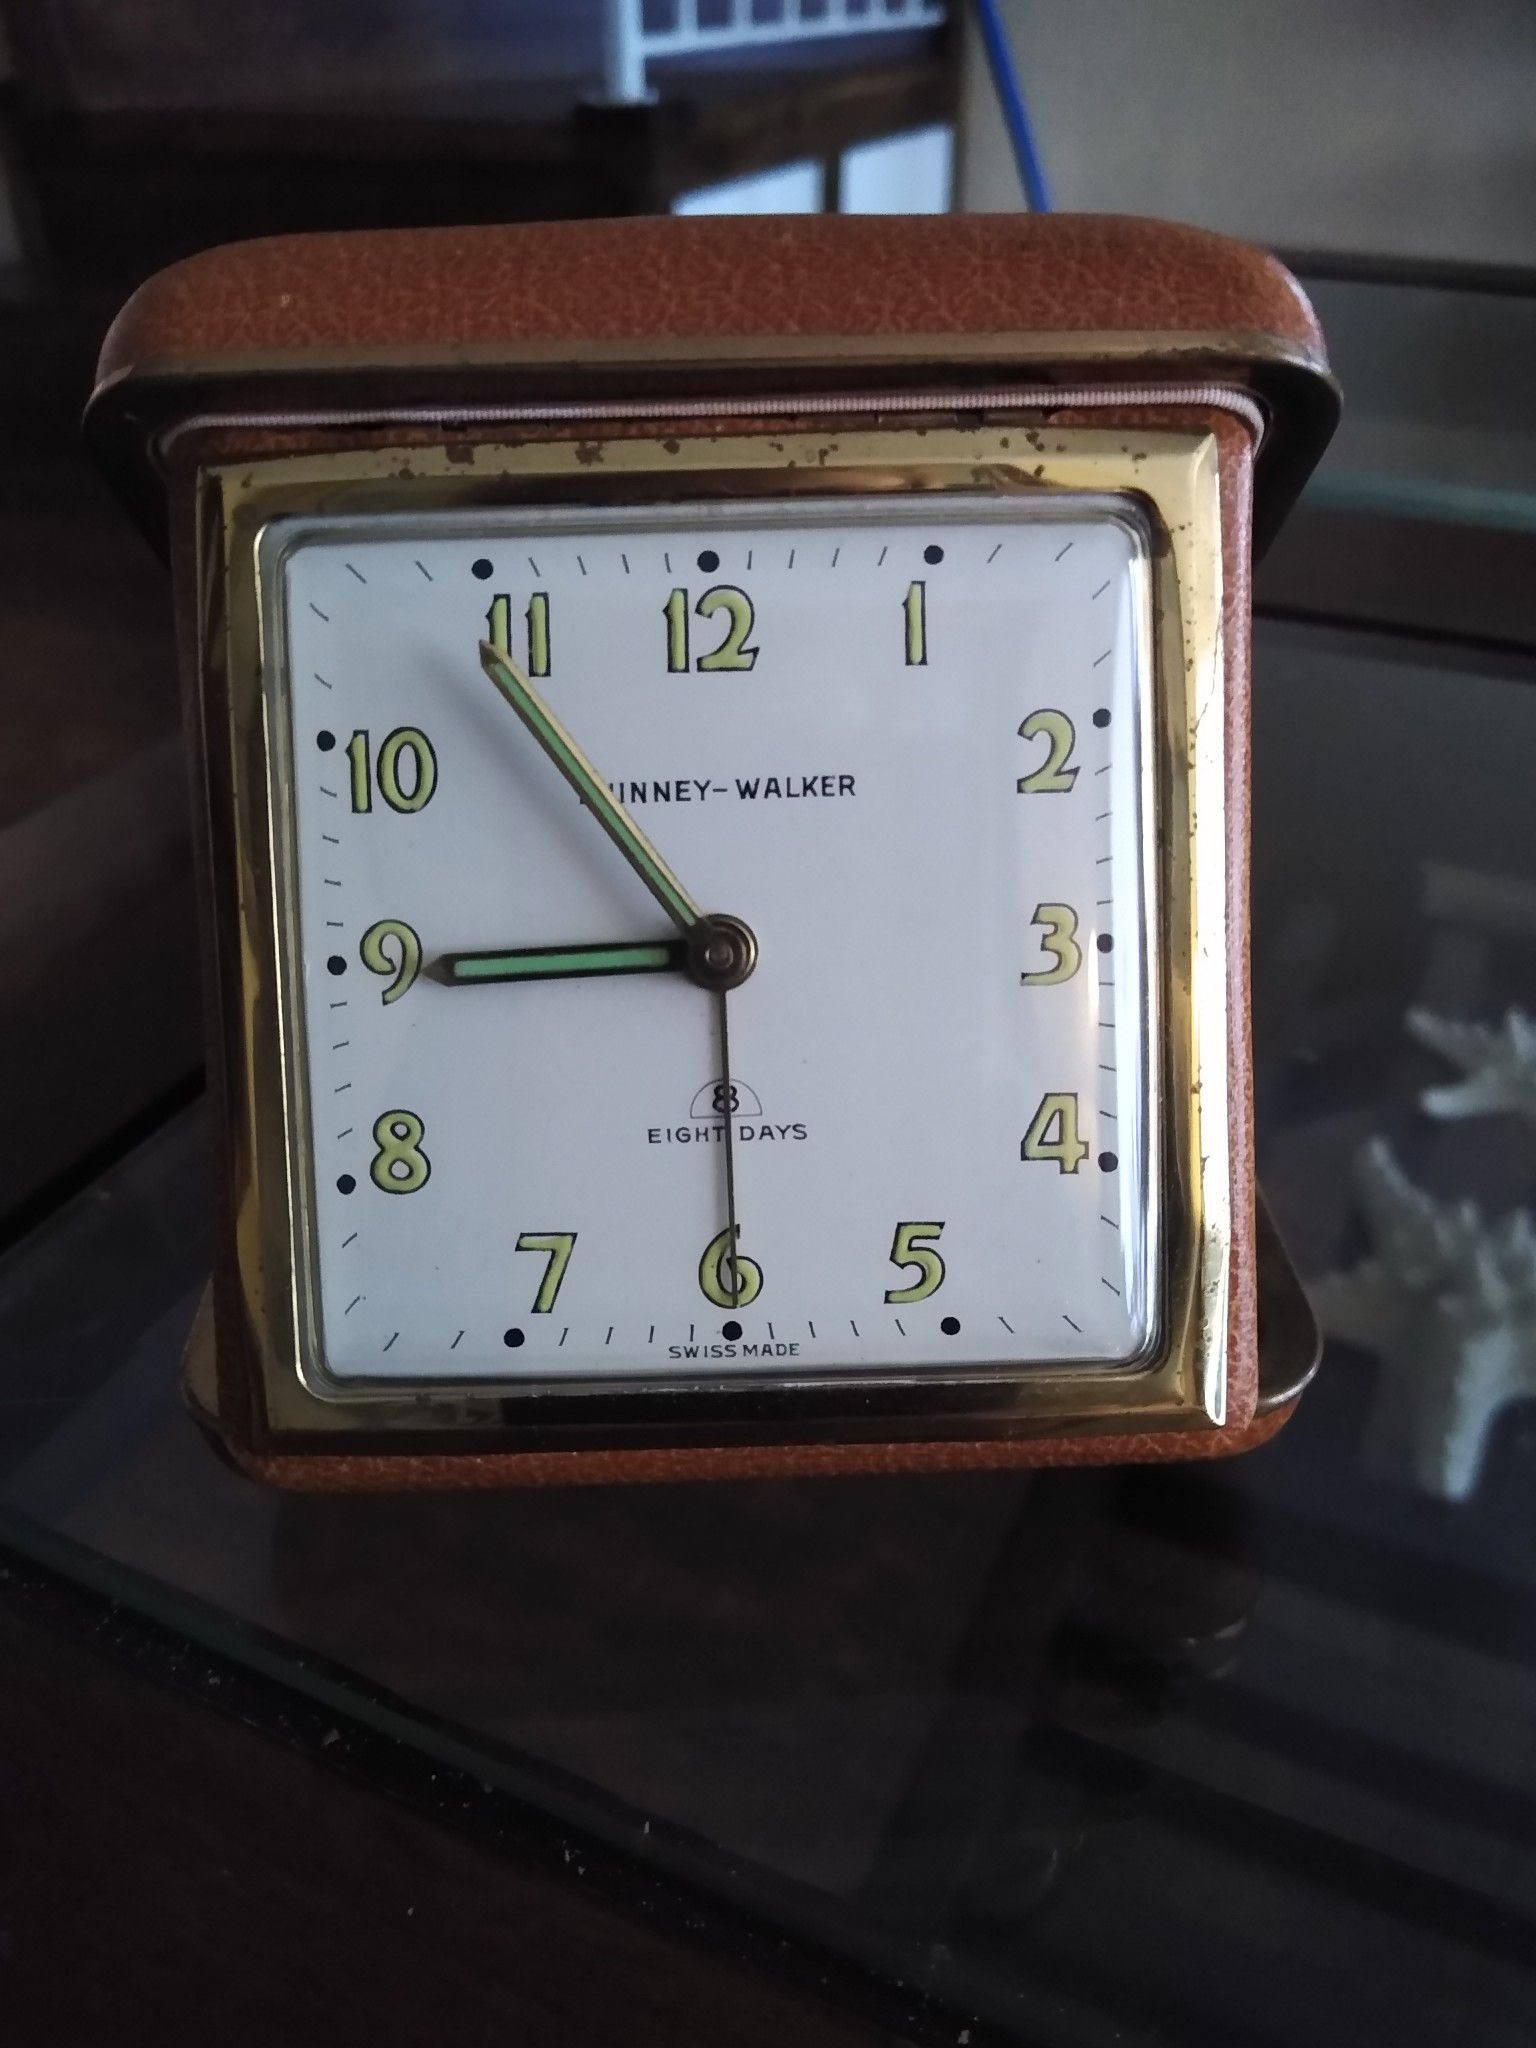 Vintage Phinney-Walker Clock Keeps Great Time